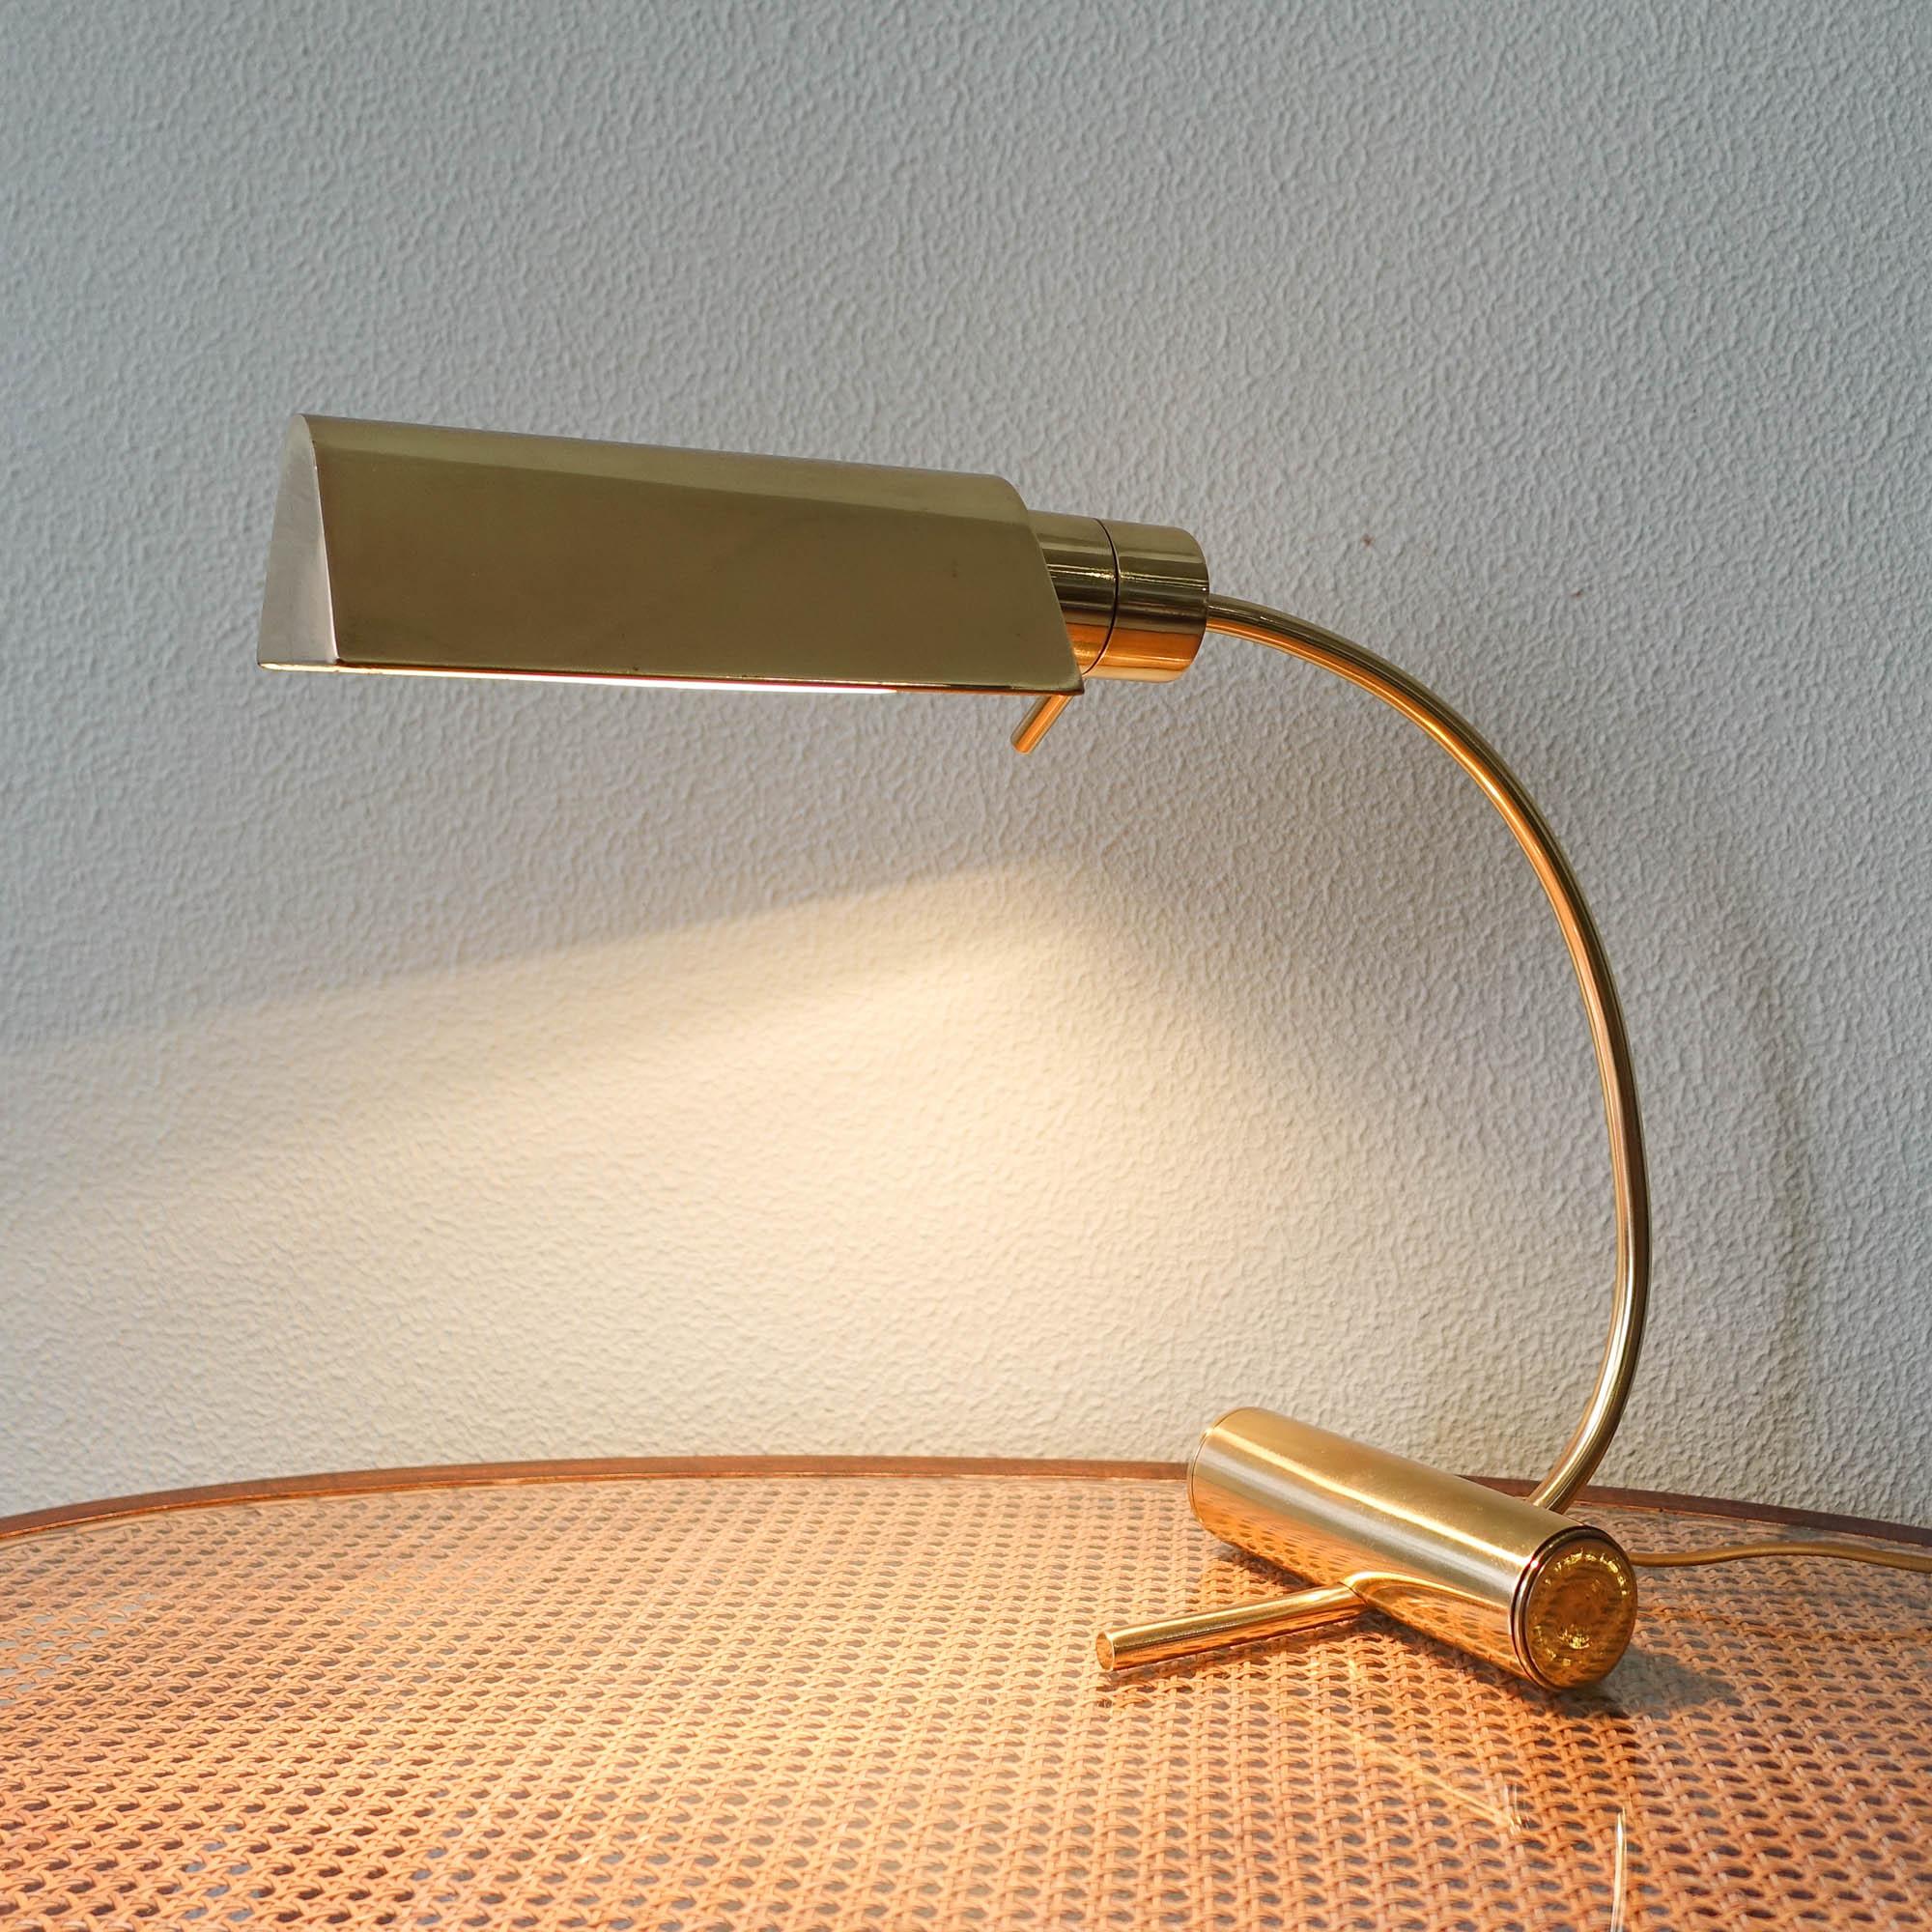 Tischlampe aus Messing von Boulanger, 1970er Jahre (Moderne der Mitte des Jahrhunderts)